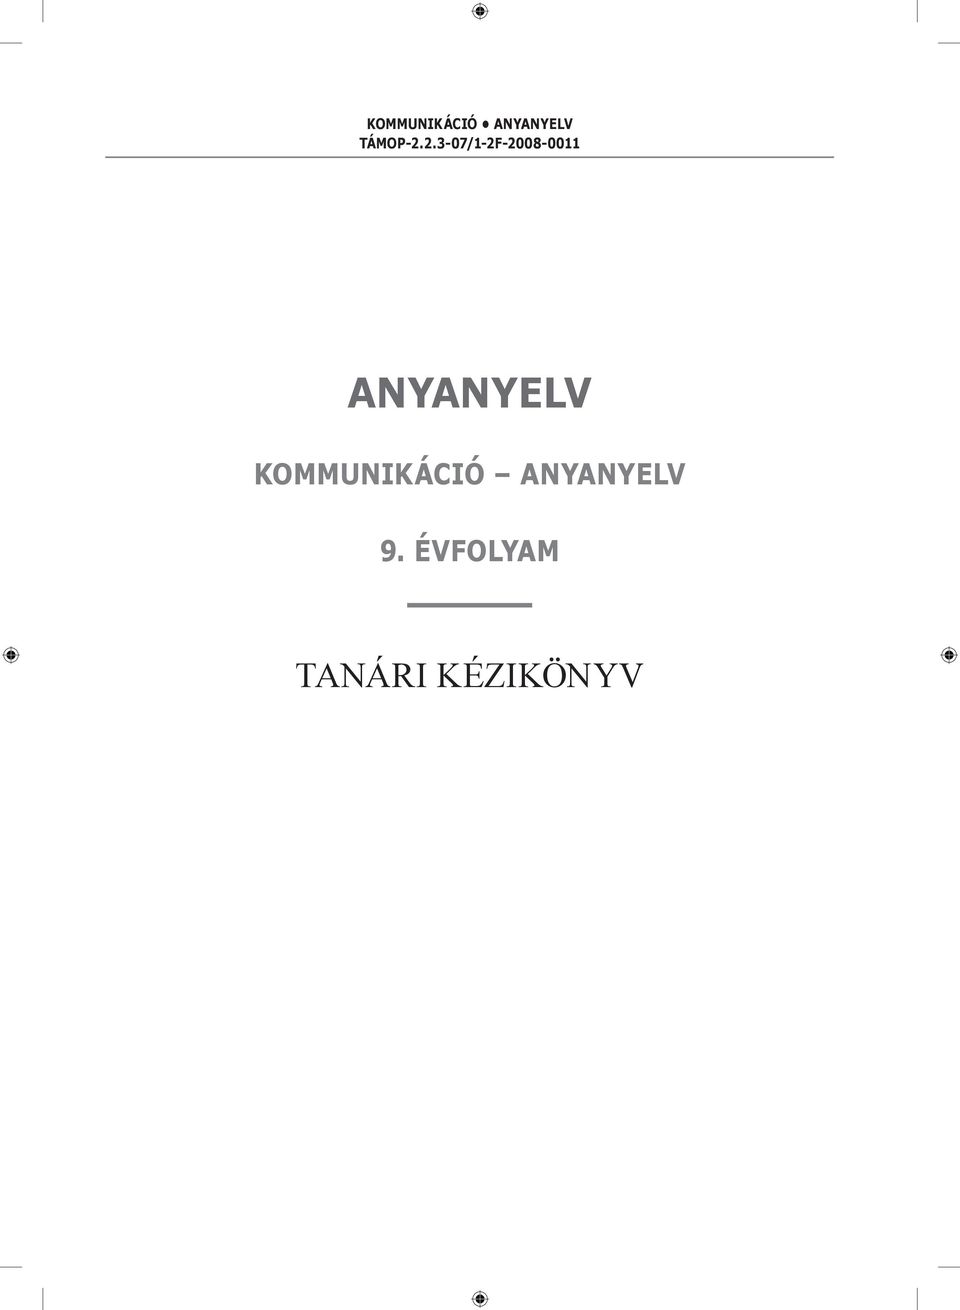 TÁMOP /1-2F Anyanyelv. kommunikáció anyanyelv. 9. évfolyam. tanári  kézikönyv - PDF Ingyenes letöltés